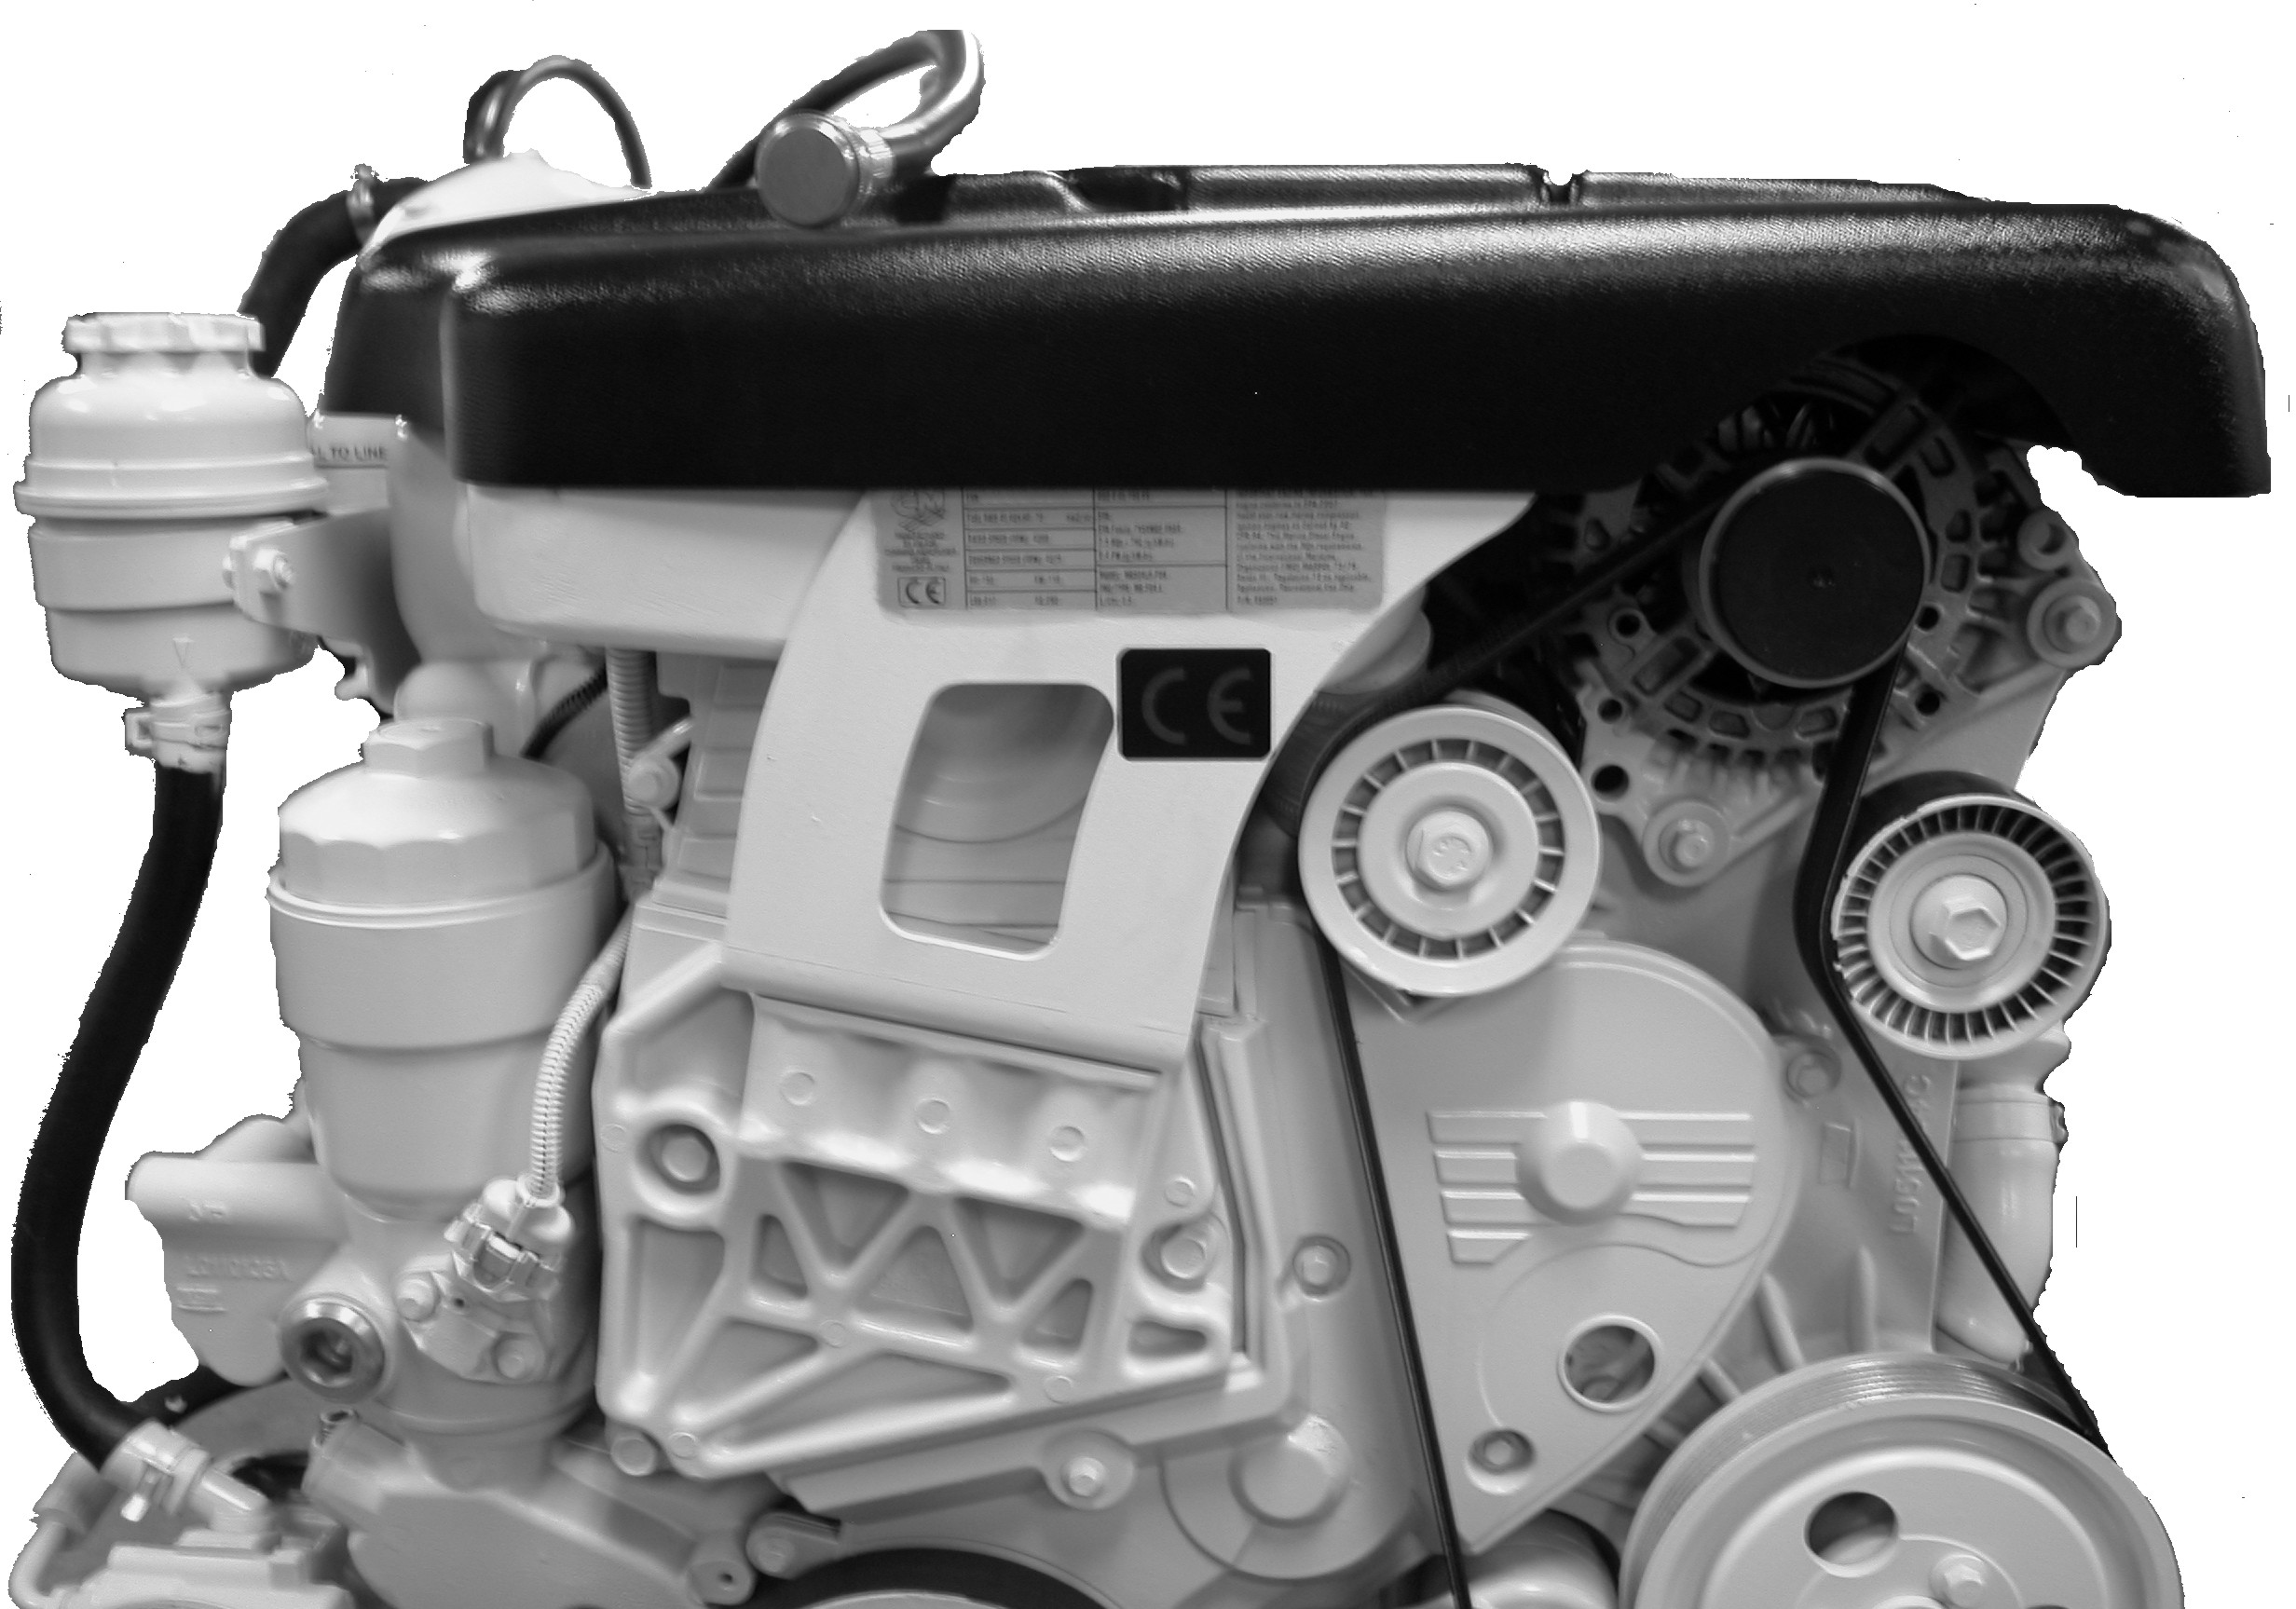 Avsnitt 2 - Beknt dig med motorpketet Identifiering Serienumren är tillverkrens nyckeldt för olik teknisk detljer som gäller motorn från Cummins MerCruiser Diesel.